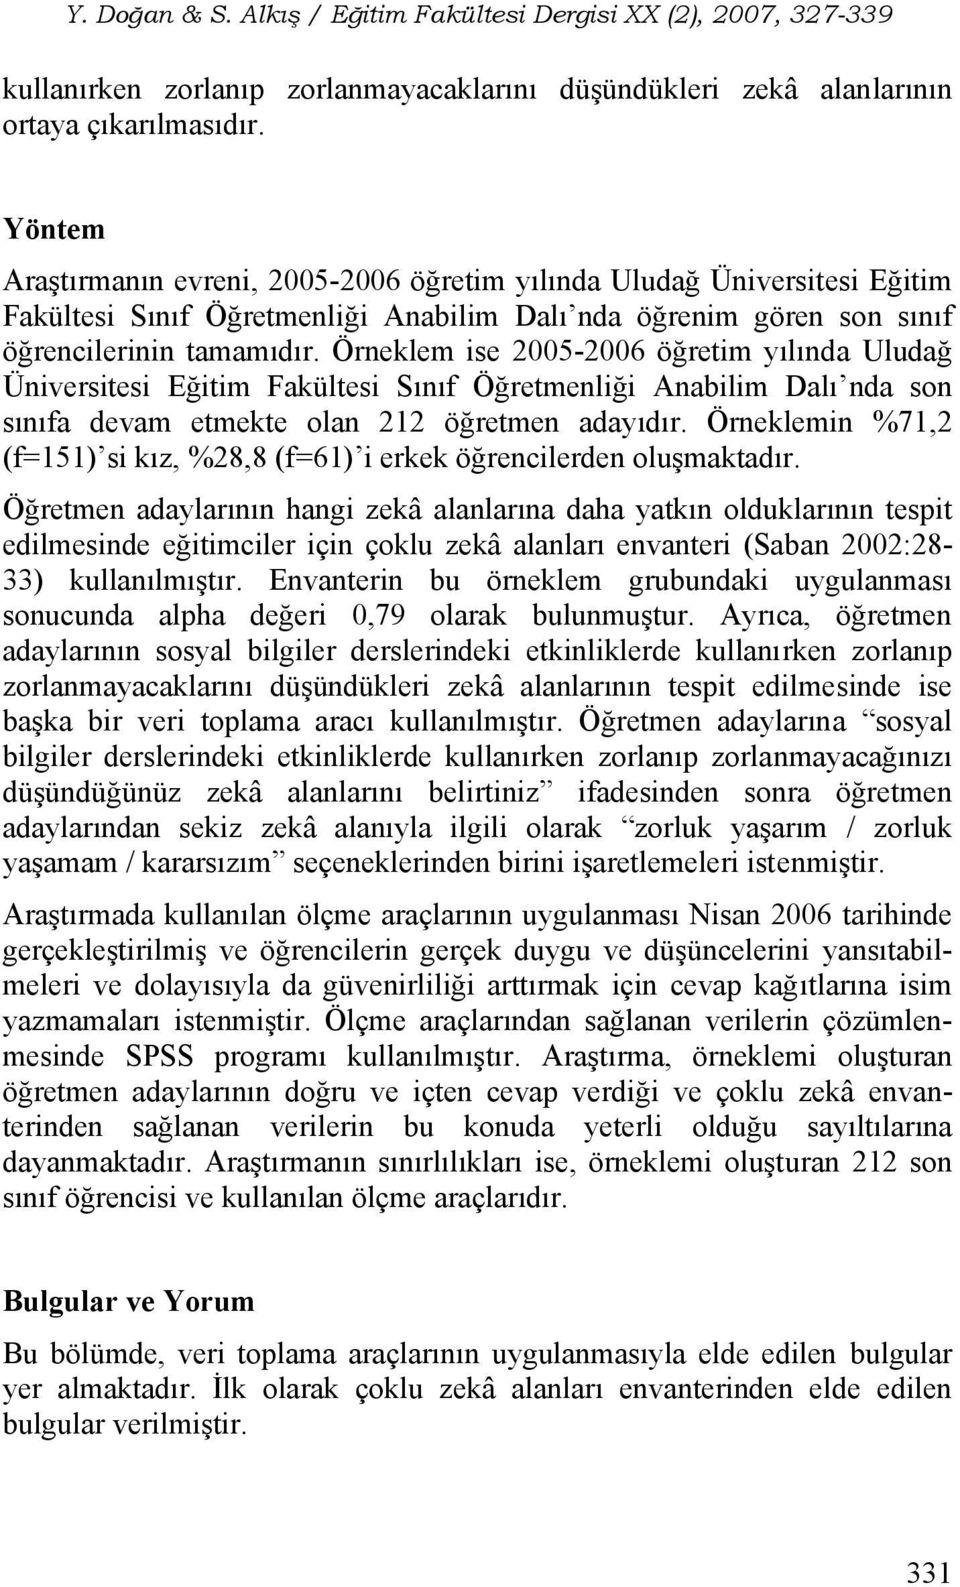 Örneklem ise 2005-2006 öğretim yılında Uludağ Üniversitesi Eğitim Fakültesi Sınıf Öğretmenliği Anabilim Dalı nda son sınıfa devam etmekte olan 212 öğretmen adayıdır.